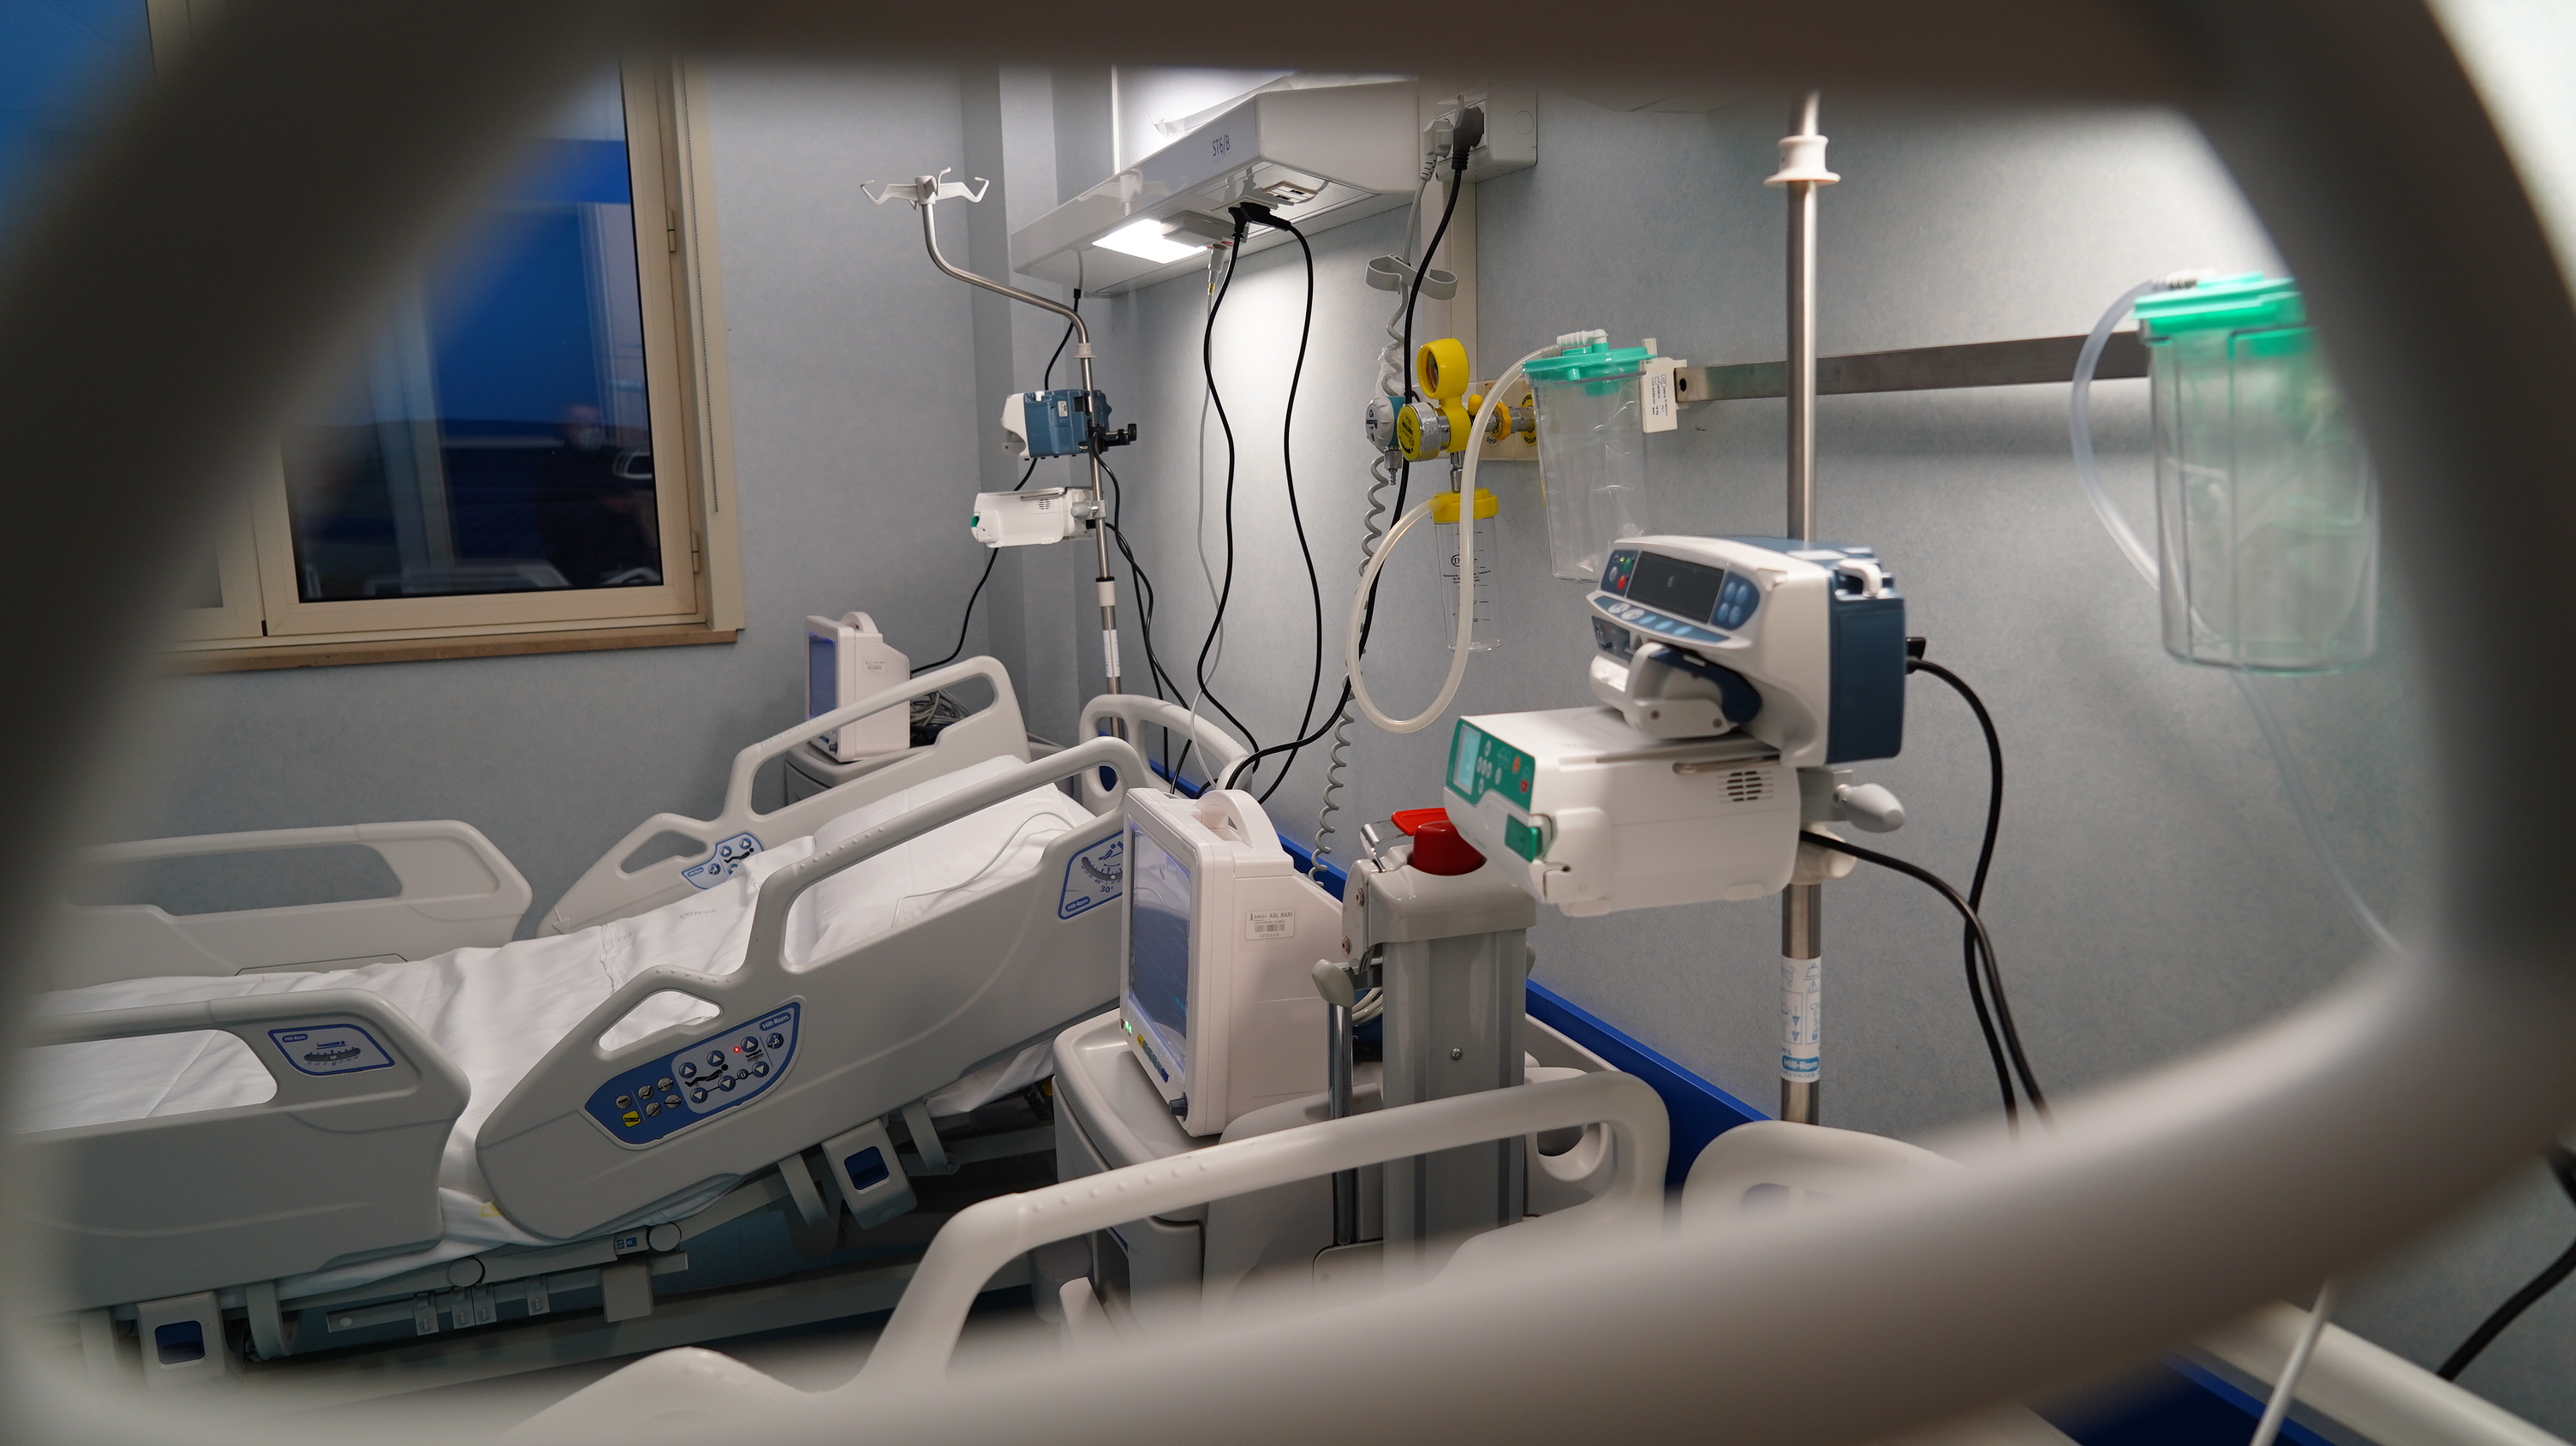 Galleria Apre il reparto Covid dell'Ospedale di Altamura: attivati 20 posti letto, ampliabili sino a 60 - Diapositiva 2 di 9